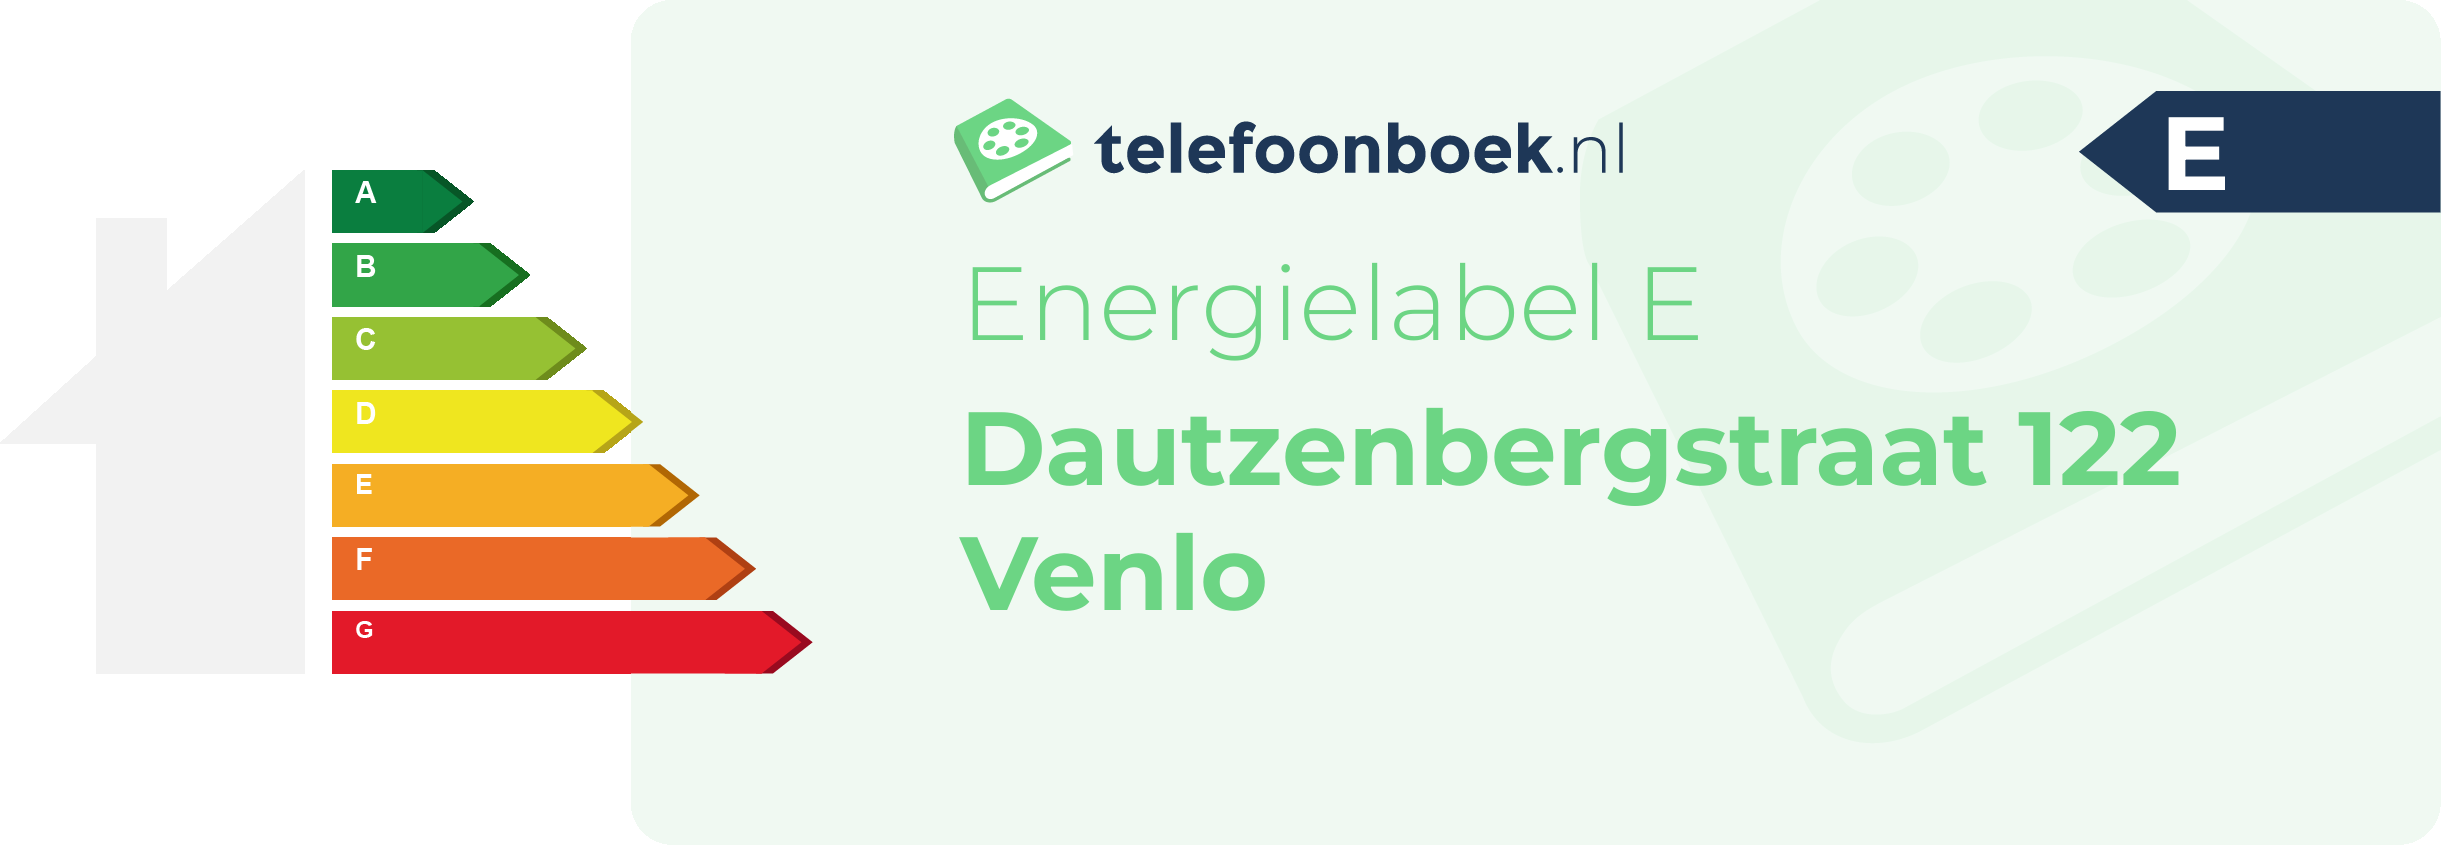 Energielabel Dautzenbergstraat 122 Venlo